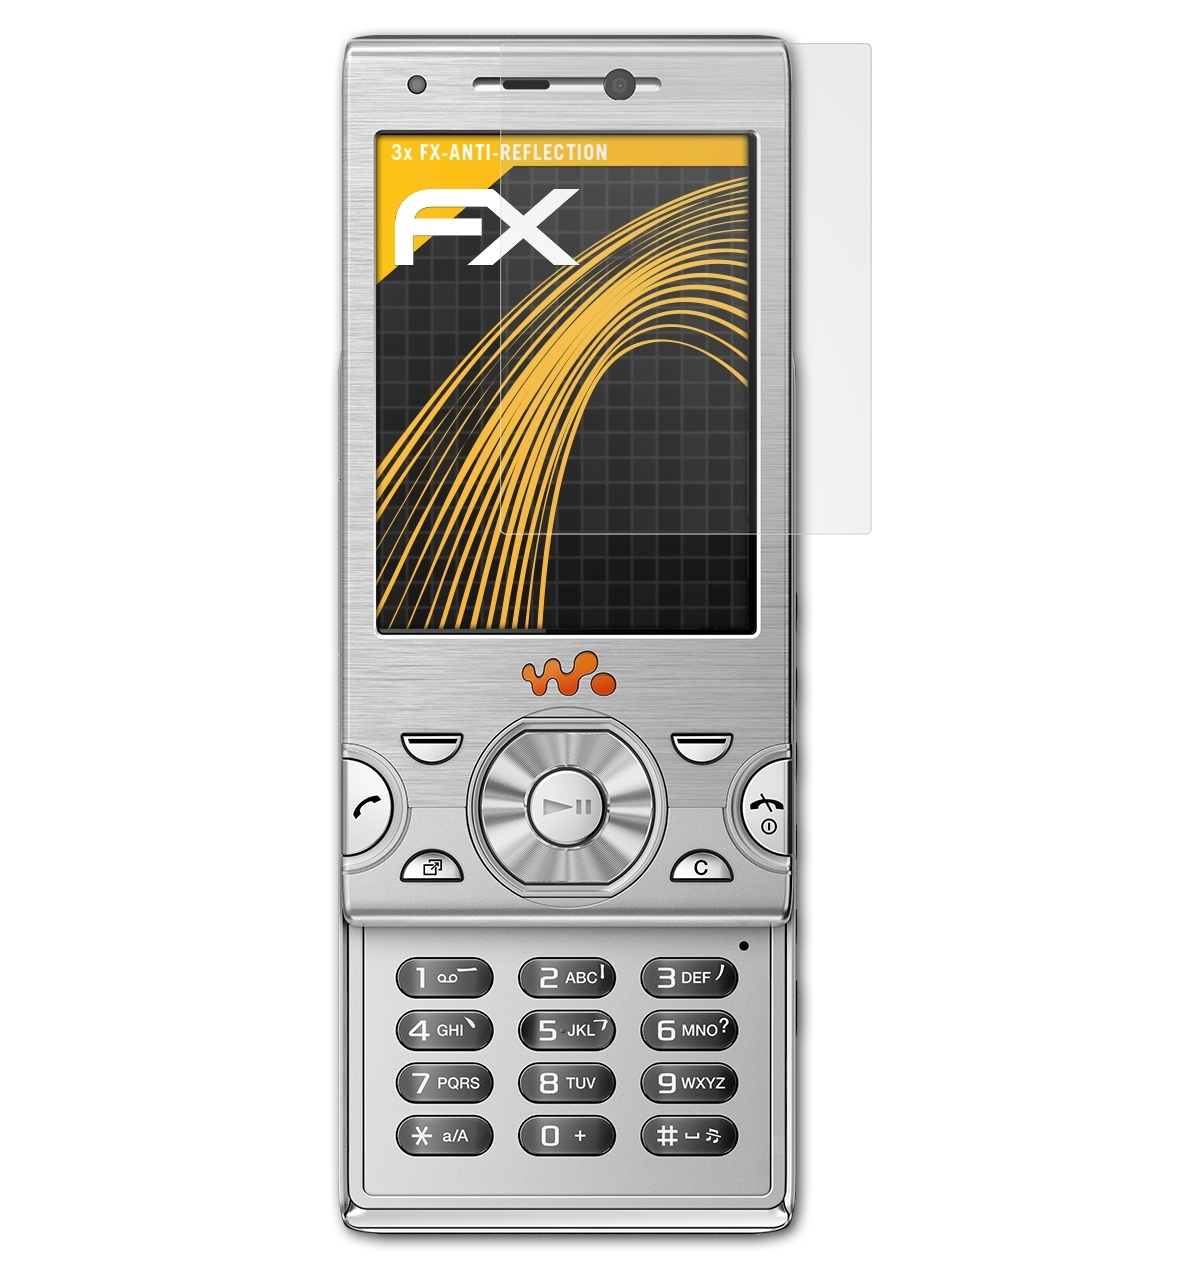 FX-Antireflex 3x W995) Displayschutz(für Sony-Ericsson ATFOLIX